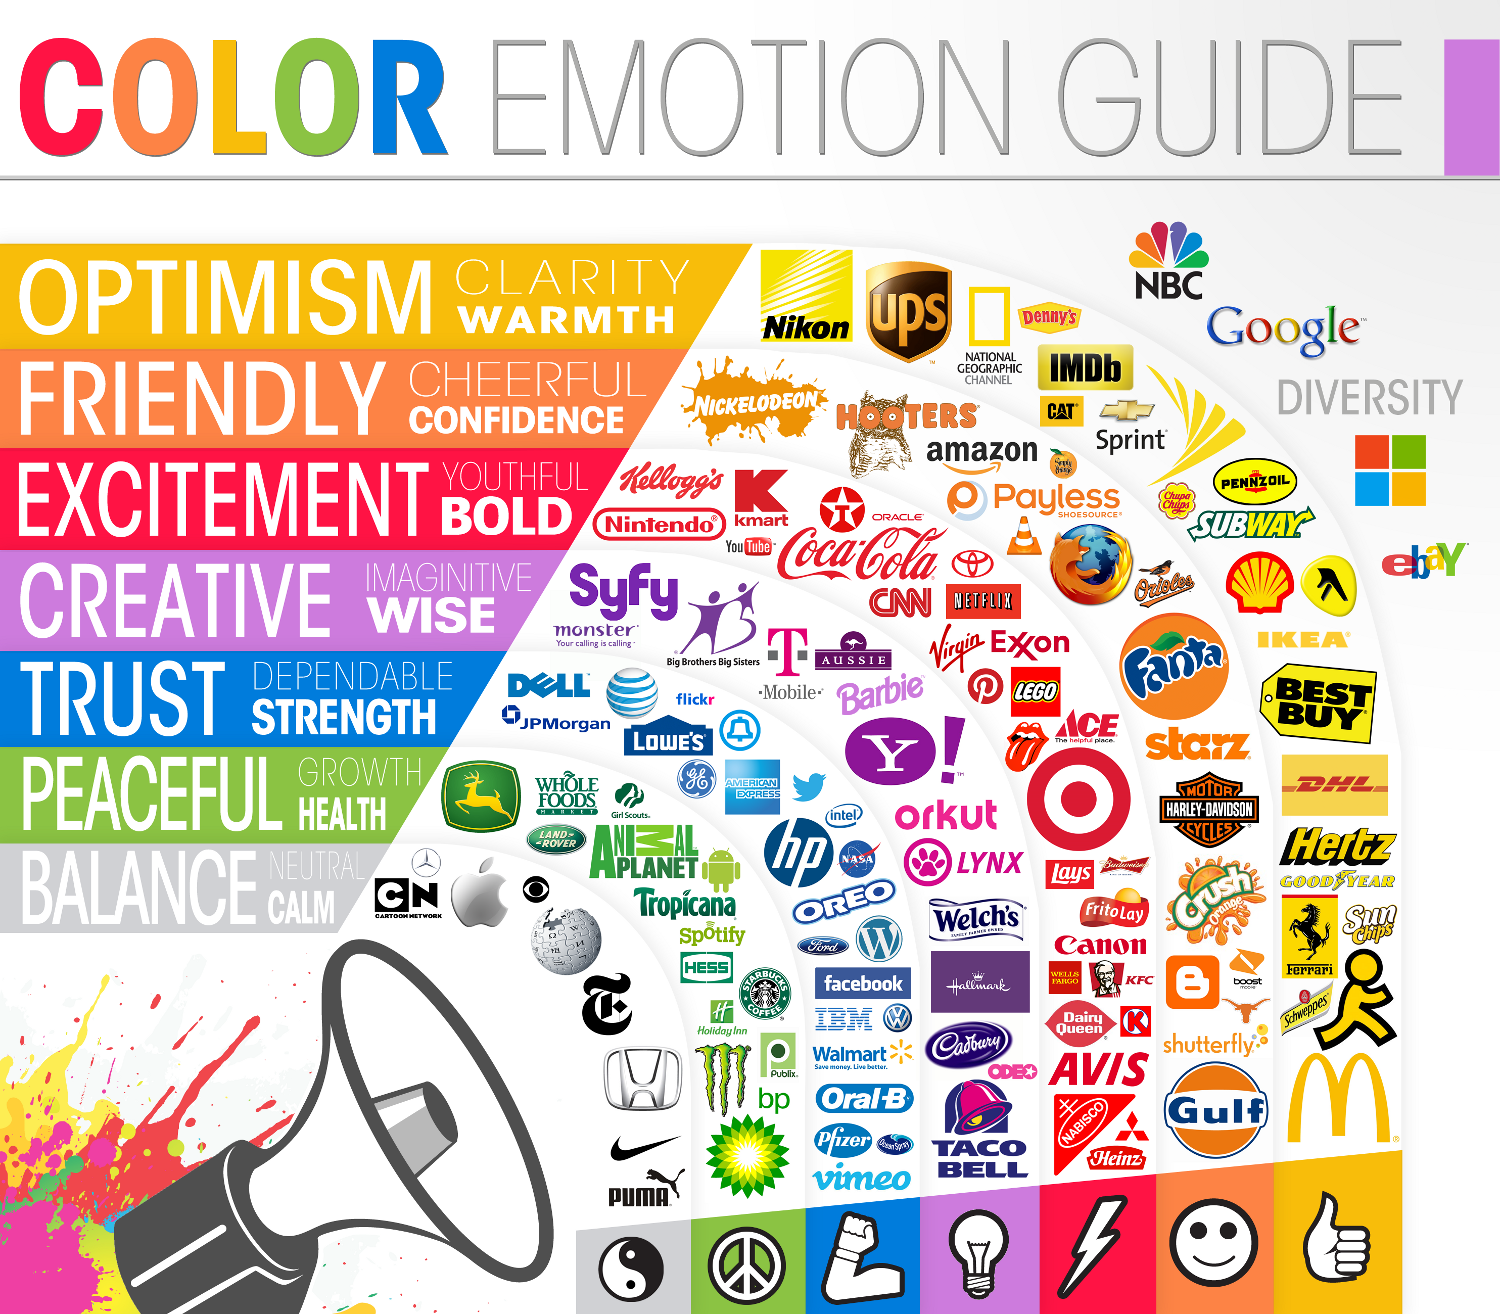 Les différentes réactions émotionnelles selon les couleurs